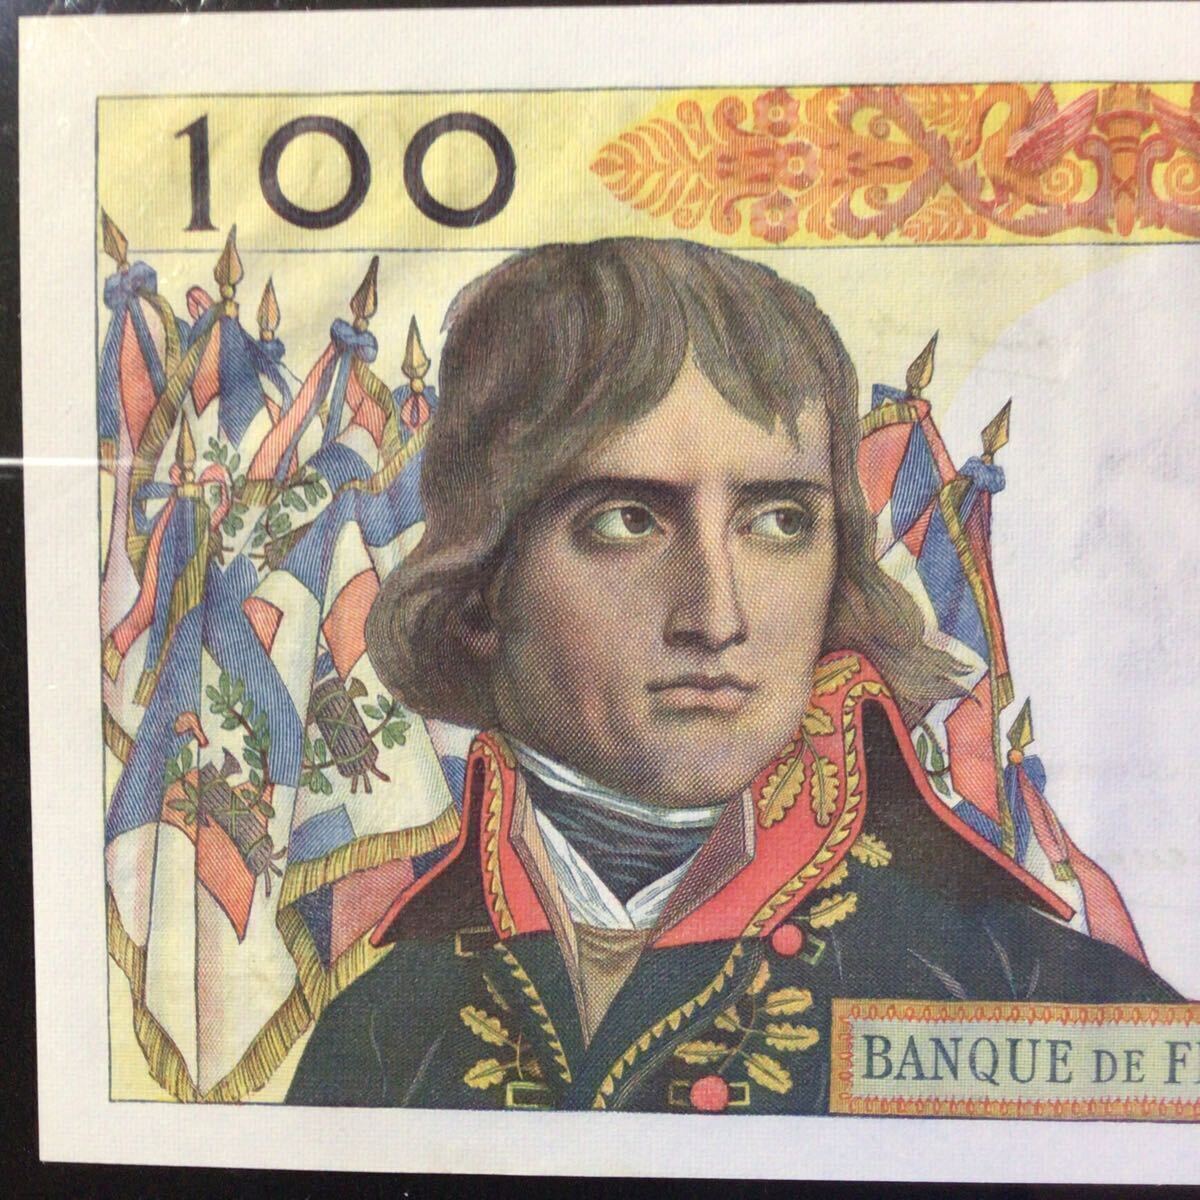 World Banknote Grading FRANCE《Banque de France》100 Nouveaux Francs【1960】『PMG Grading About Uncirculated 55』_画像6